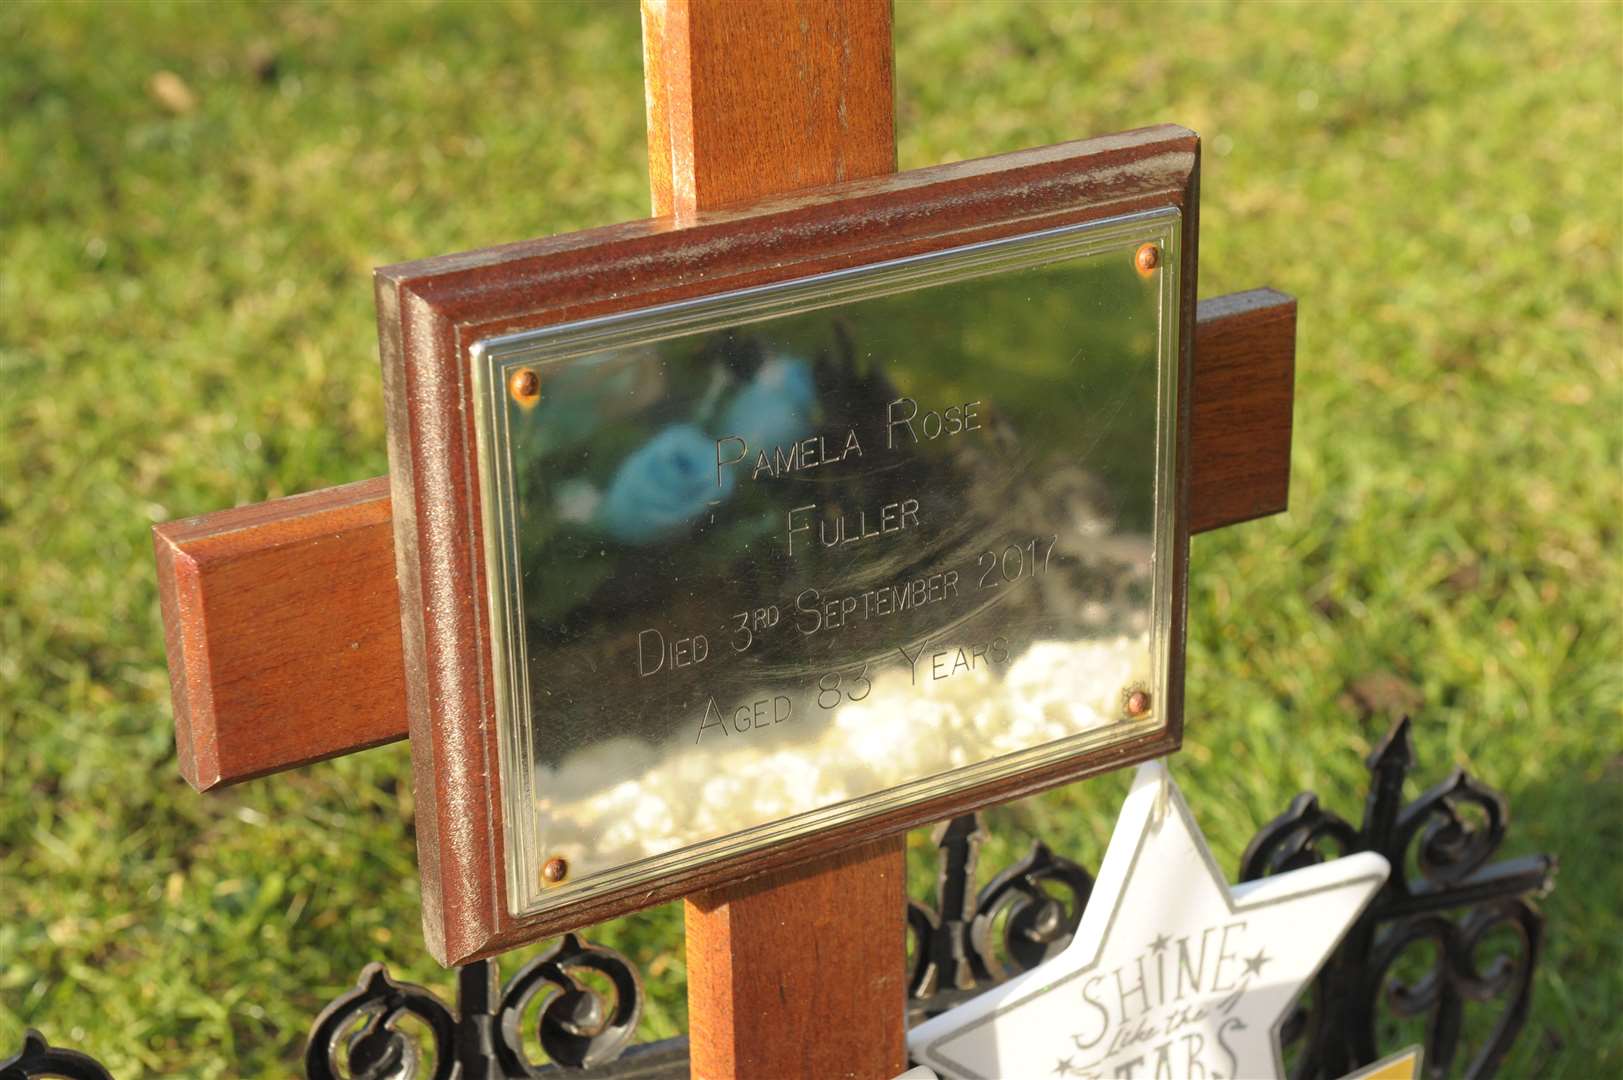 Pamela Fuller's grave